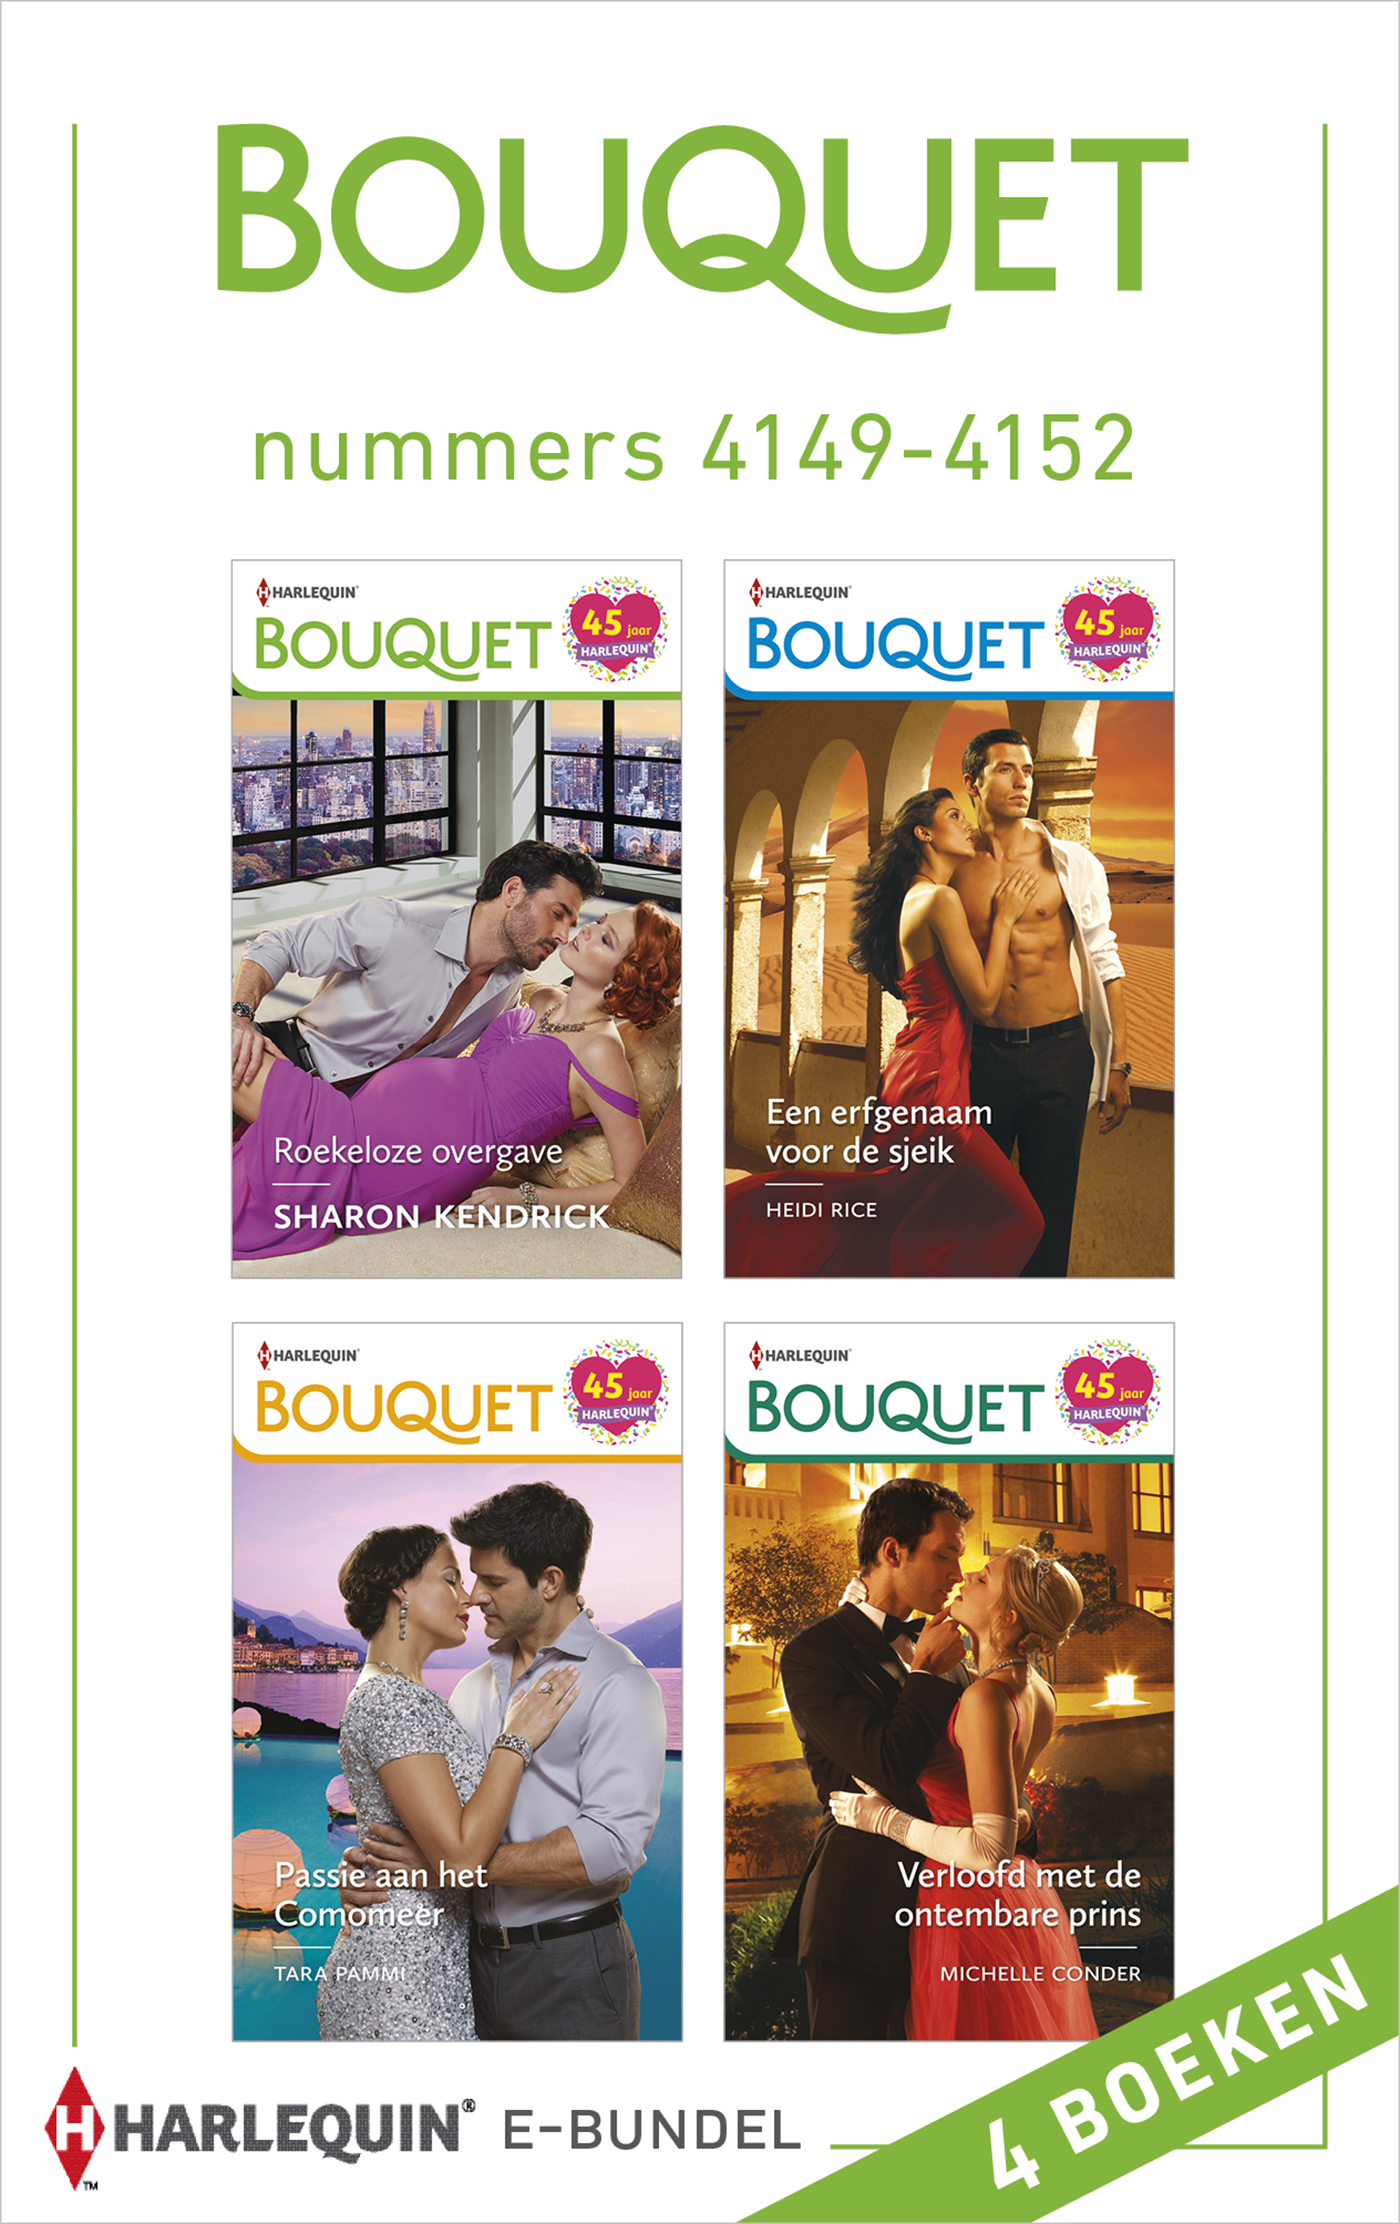 Bouquet e-bundel nummers 4149 - 4152